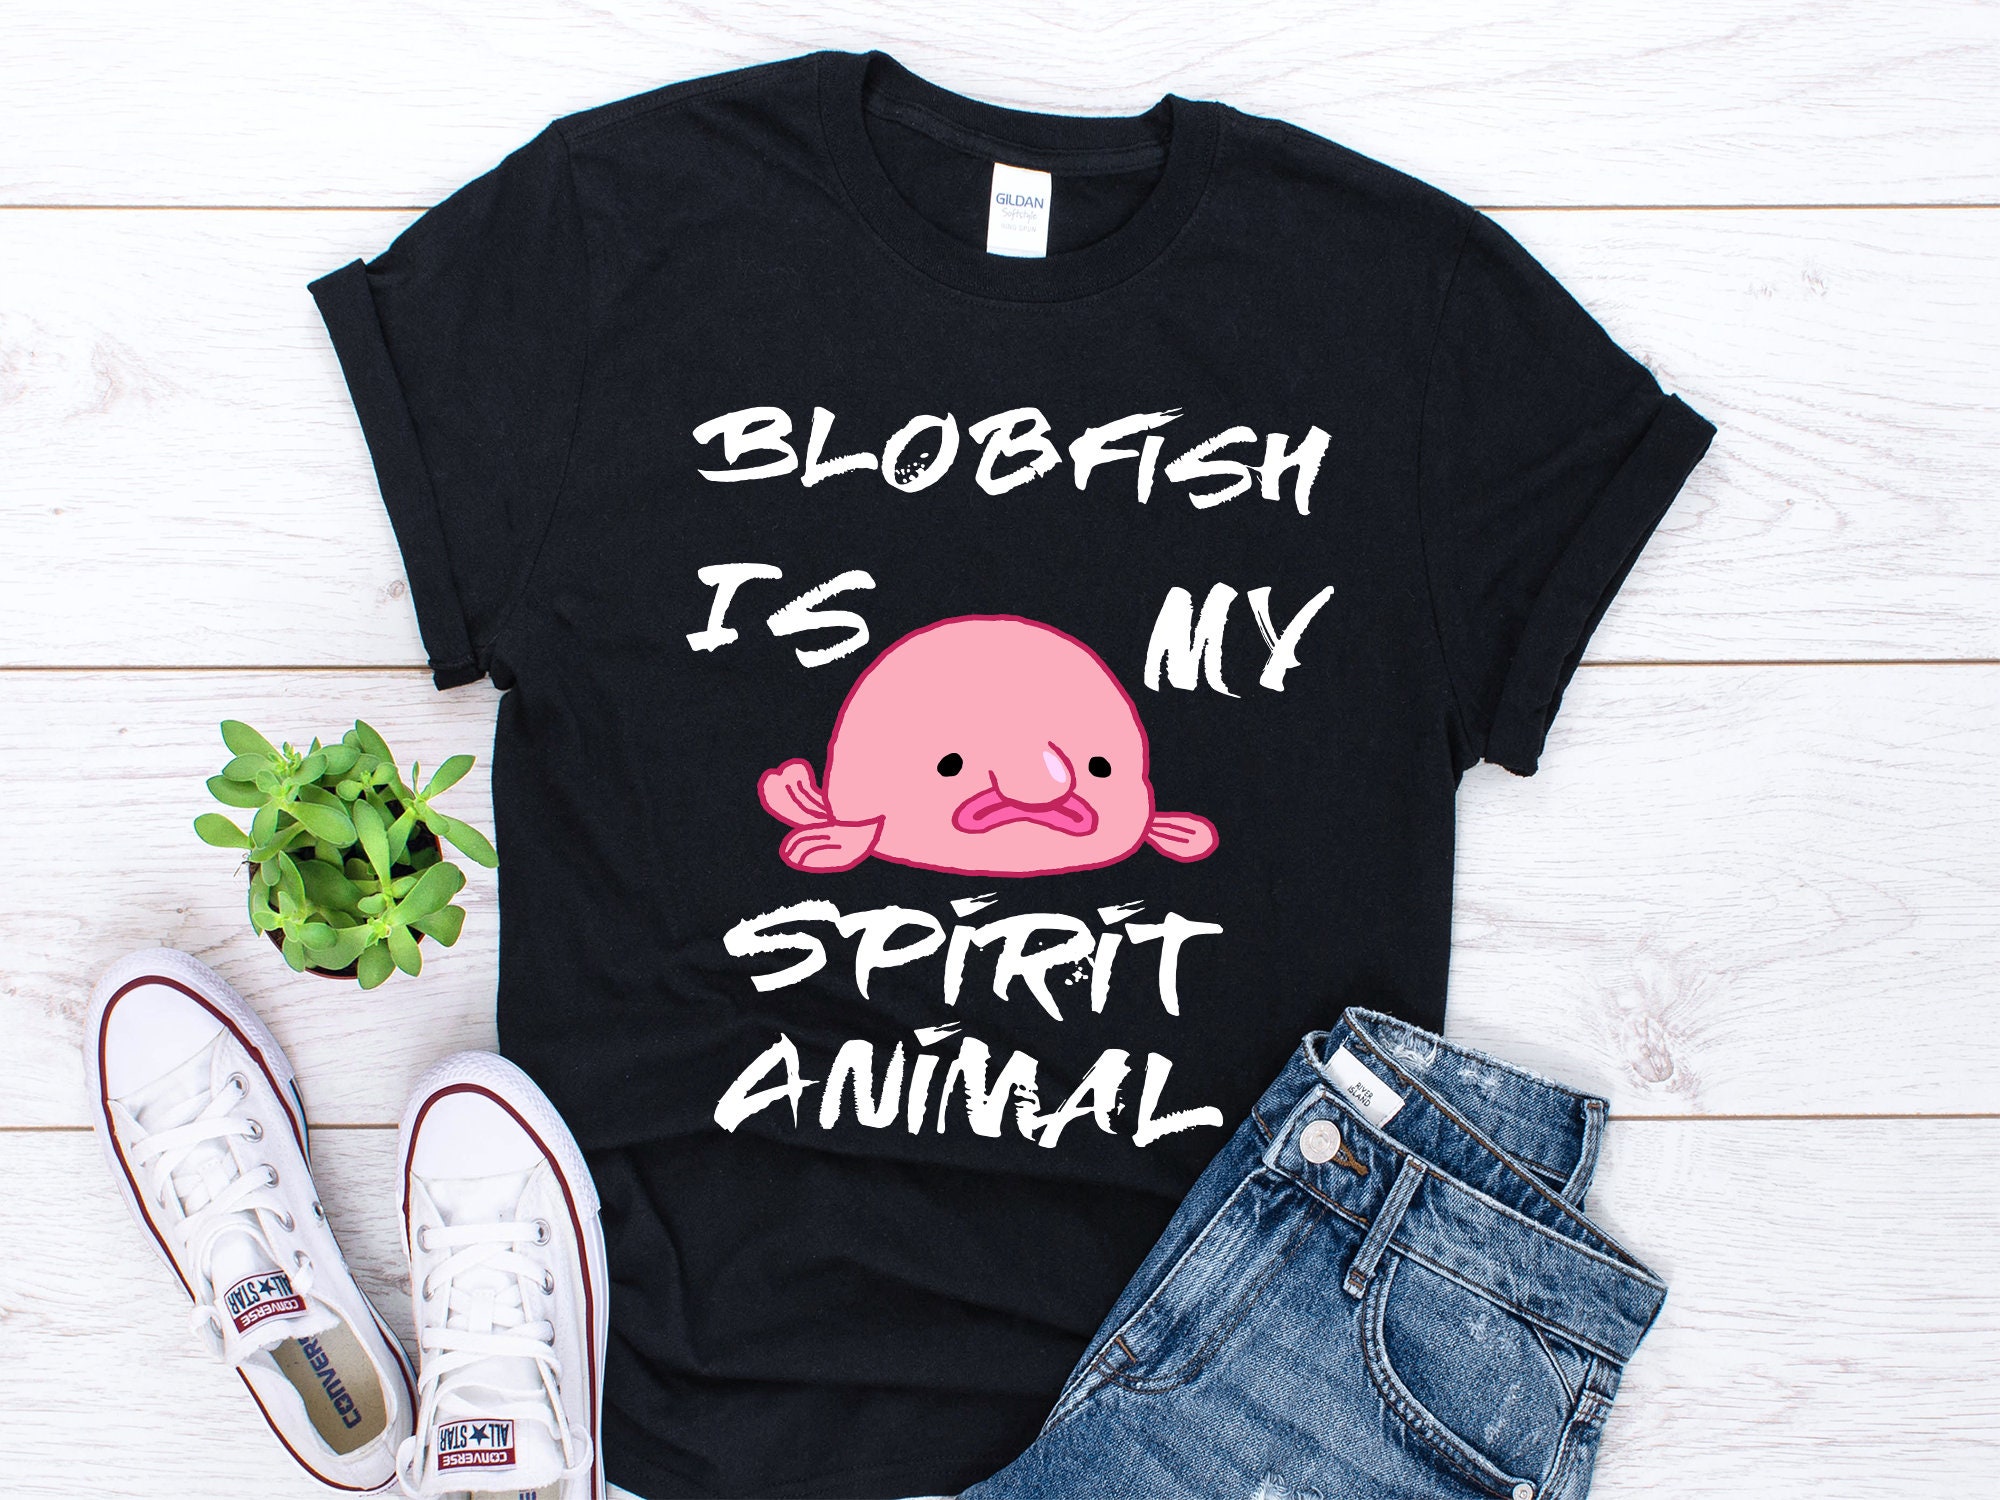 Blobfish Plush - Shut Up And Take My Money